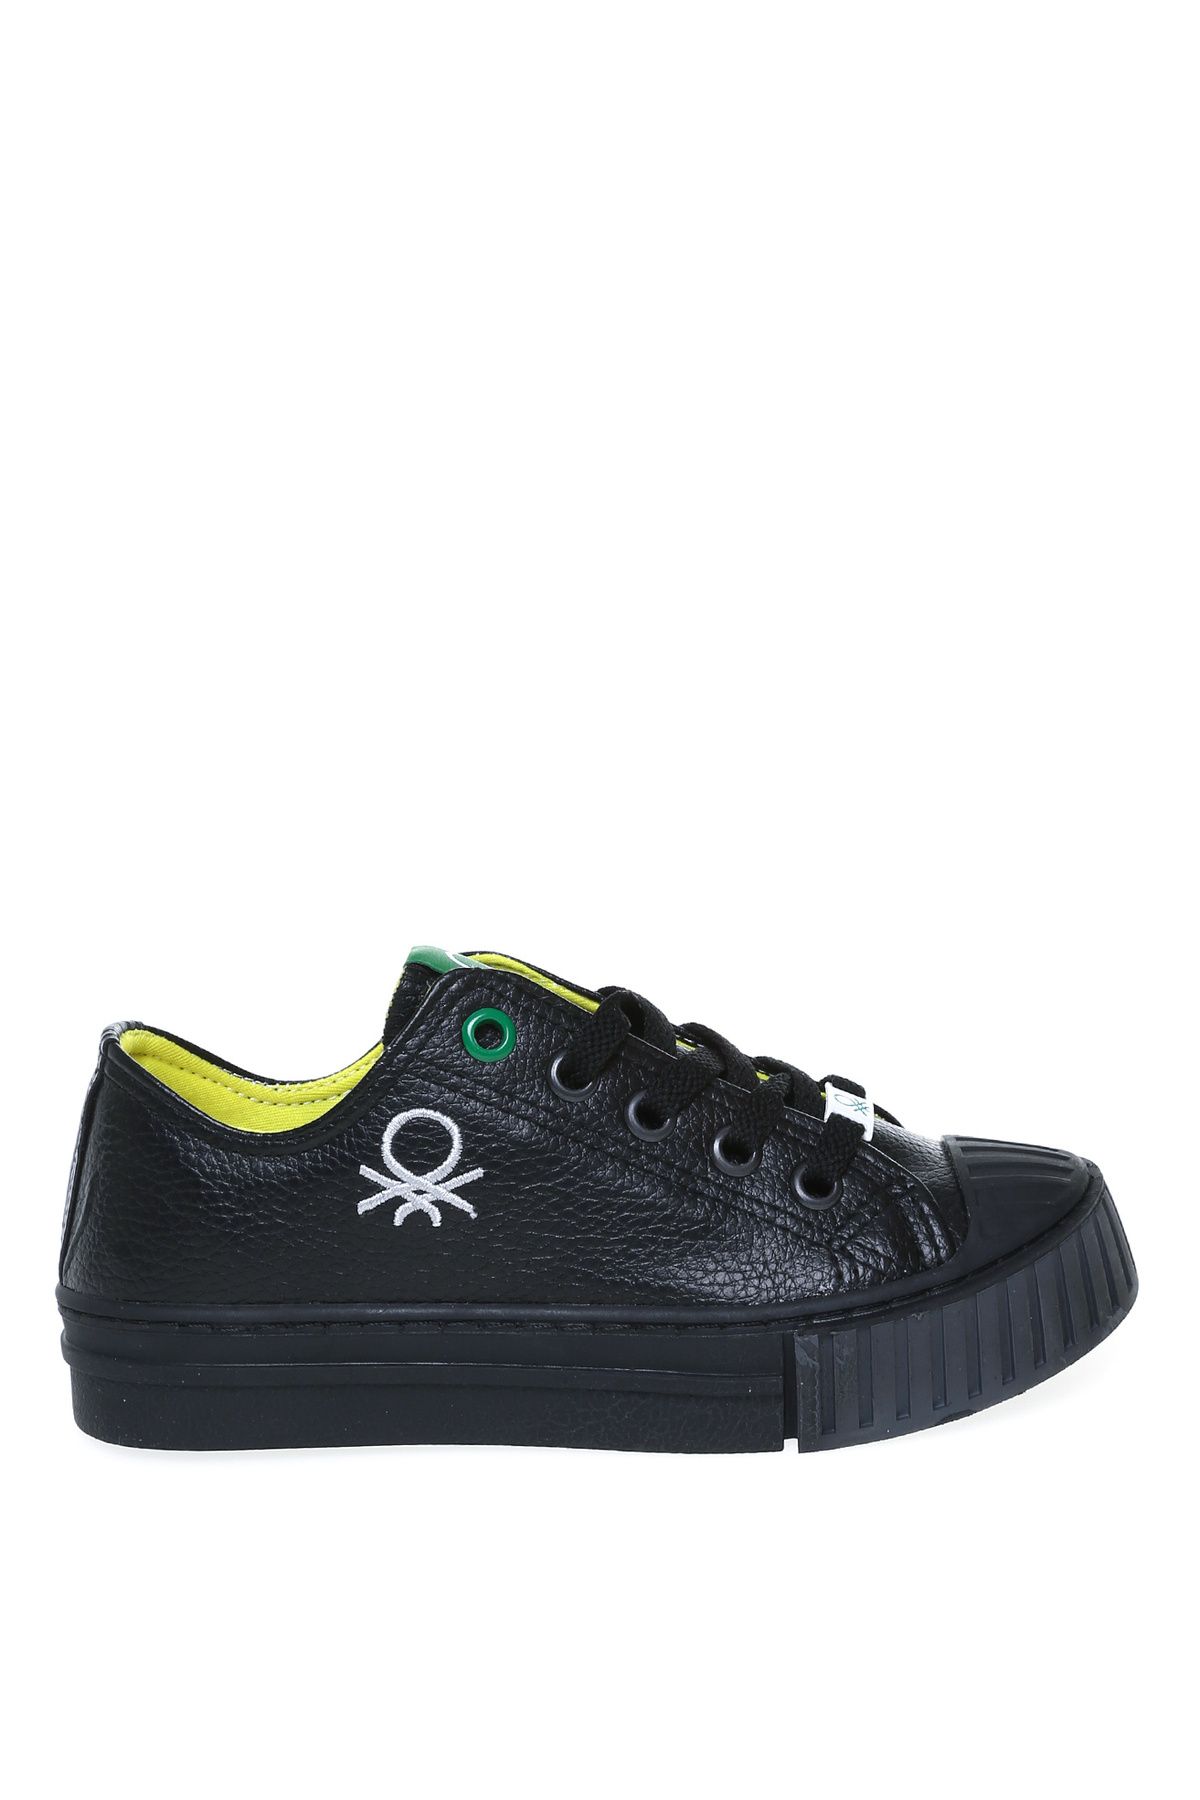 Benetton Siyah - Gri Erkek Çocuk Yürüyüş Ayakkabısı BN-30557